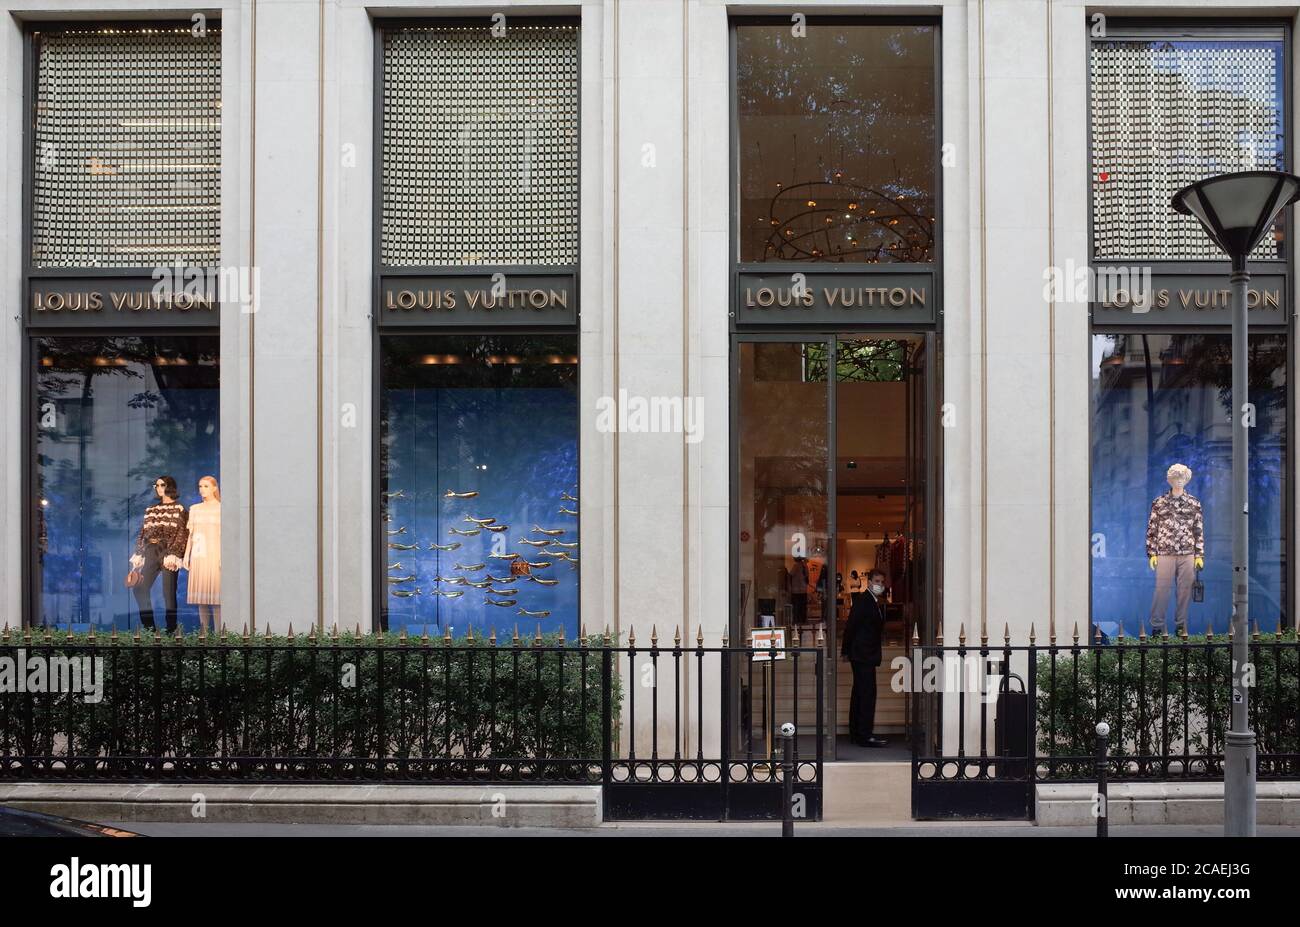 Une vitrine magnifique signée Louis Vuitton